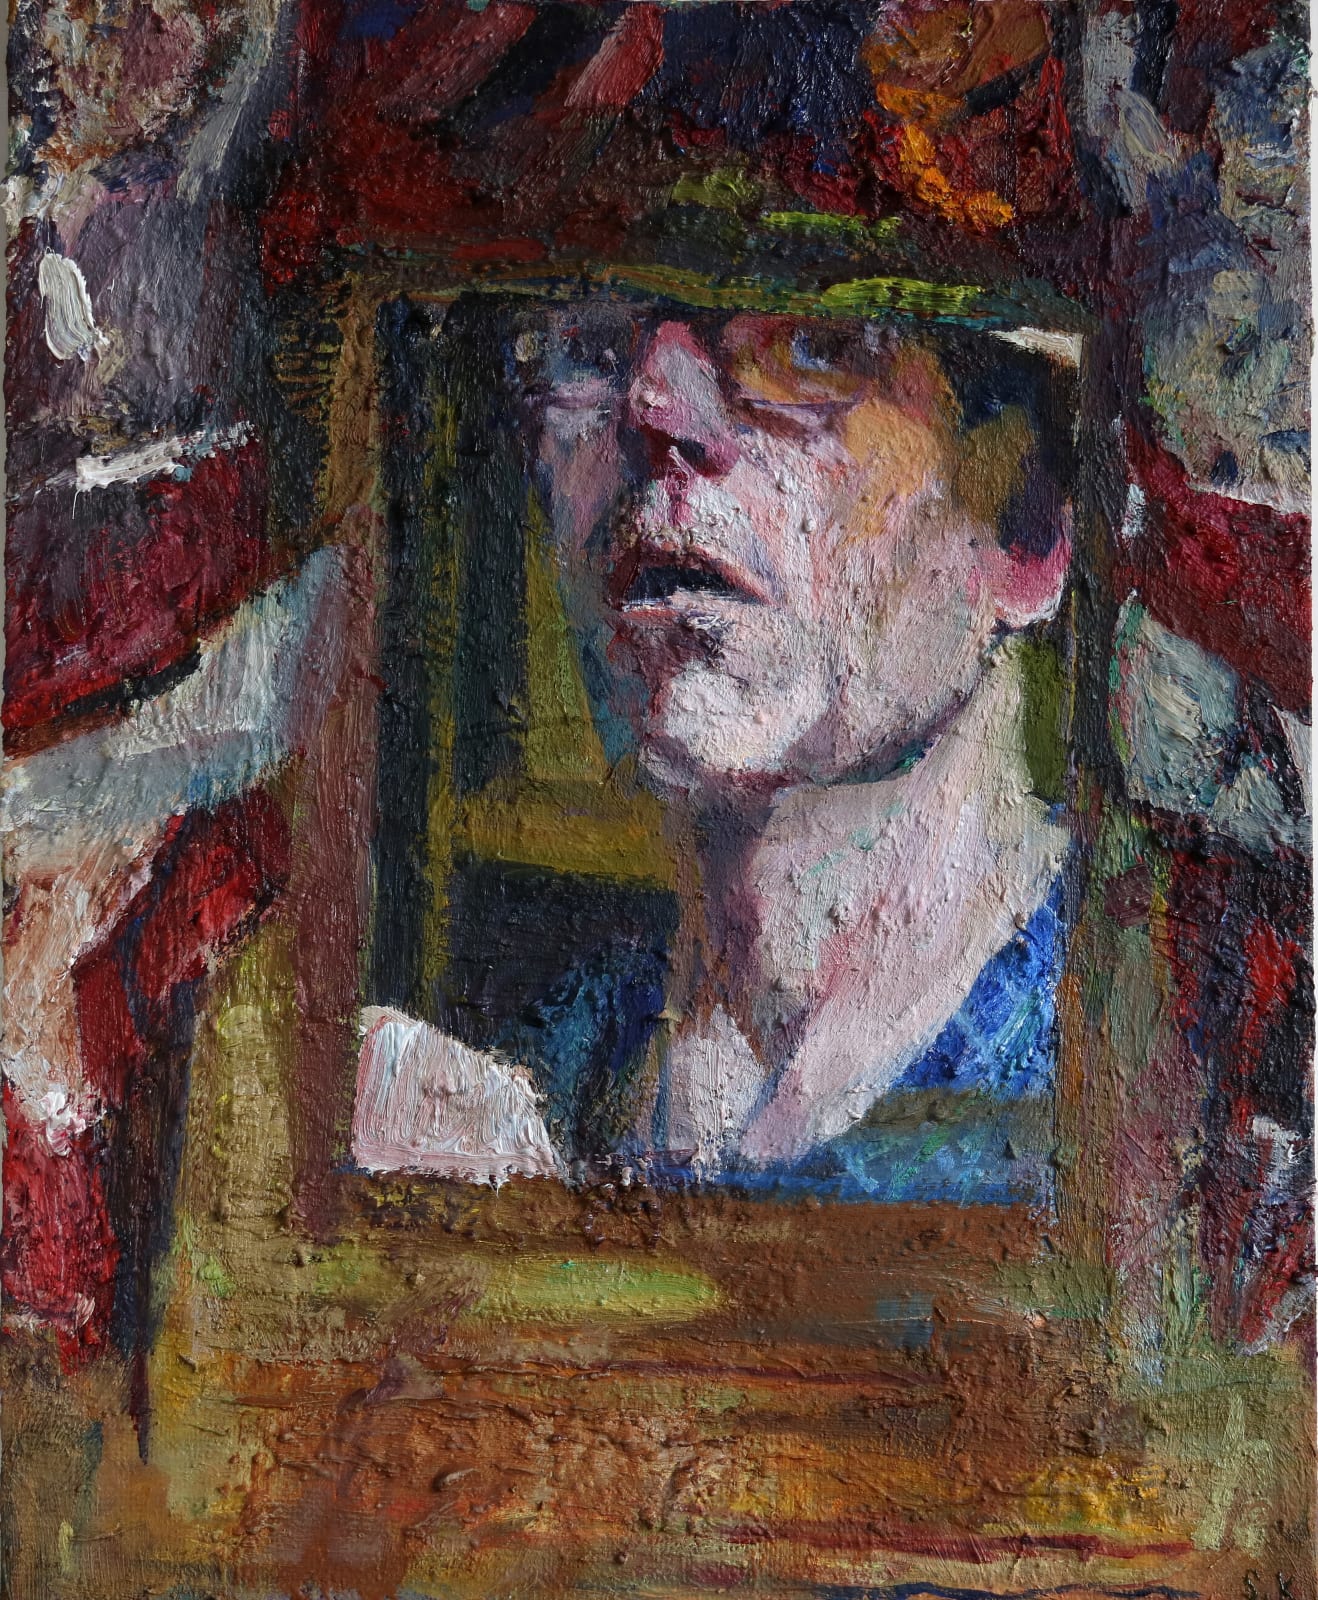 Simon Klein, Self Portrait with Cherubs, 2015